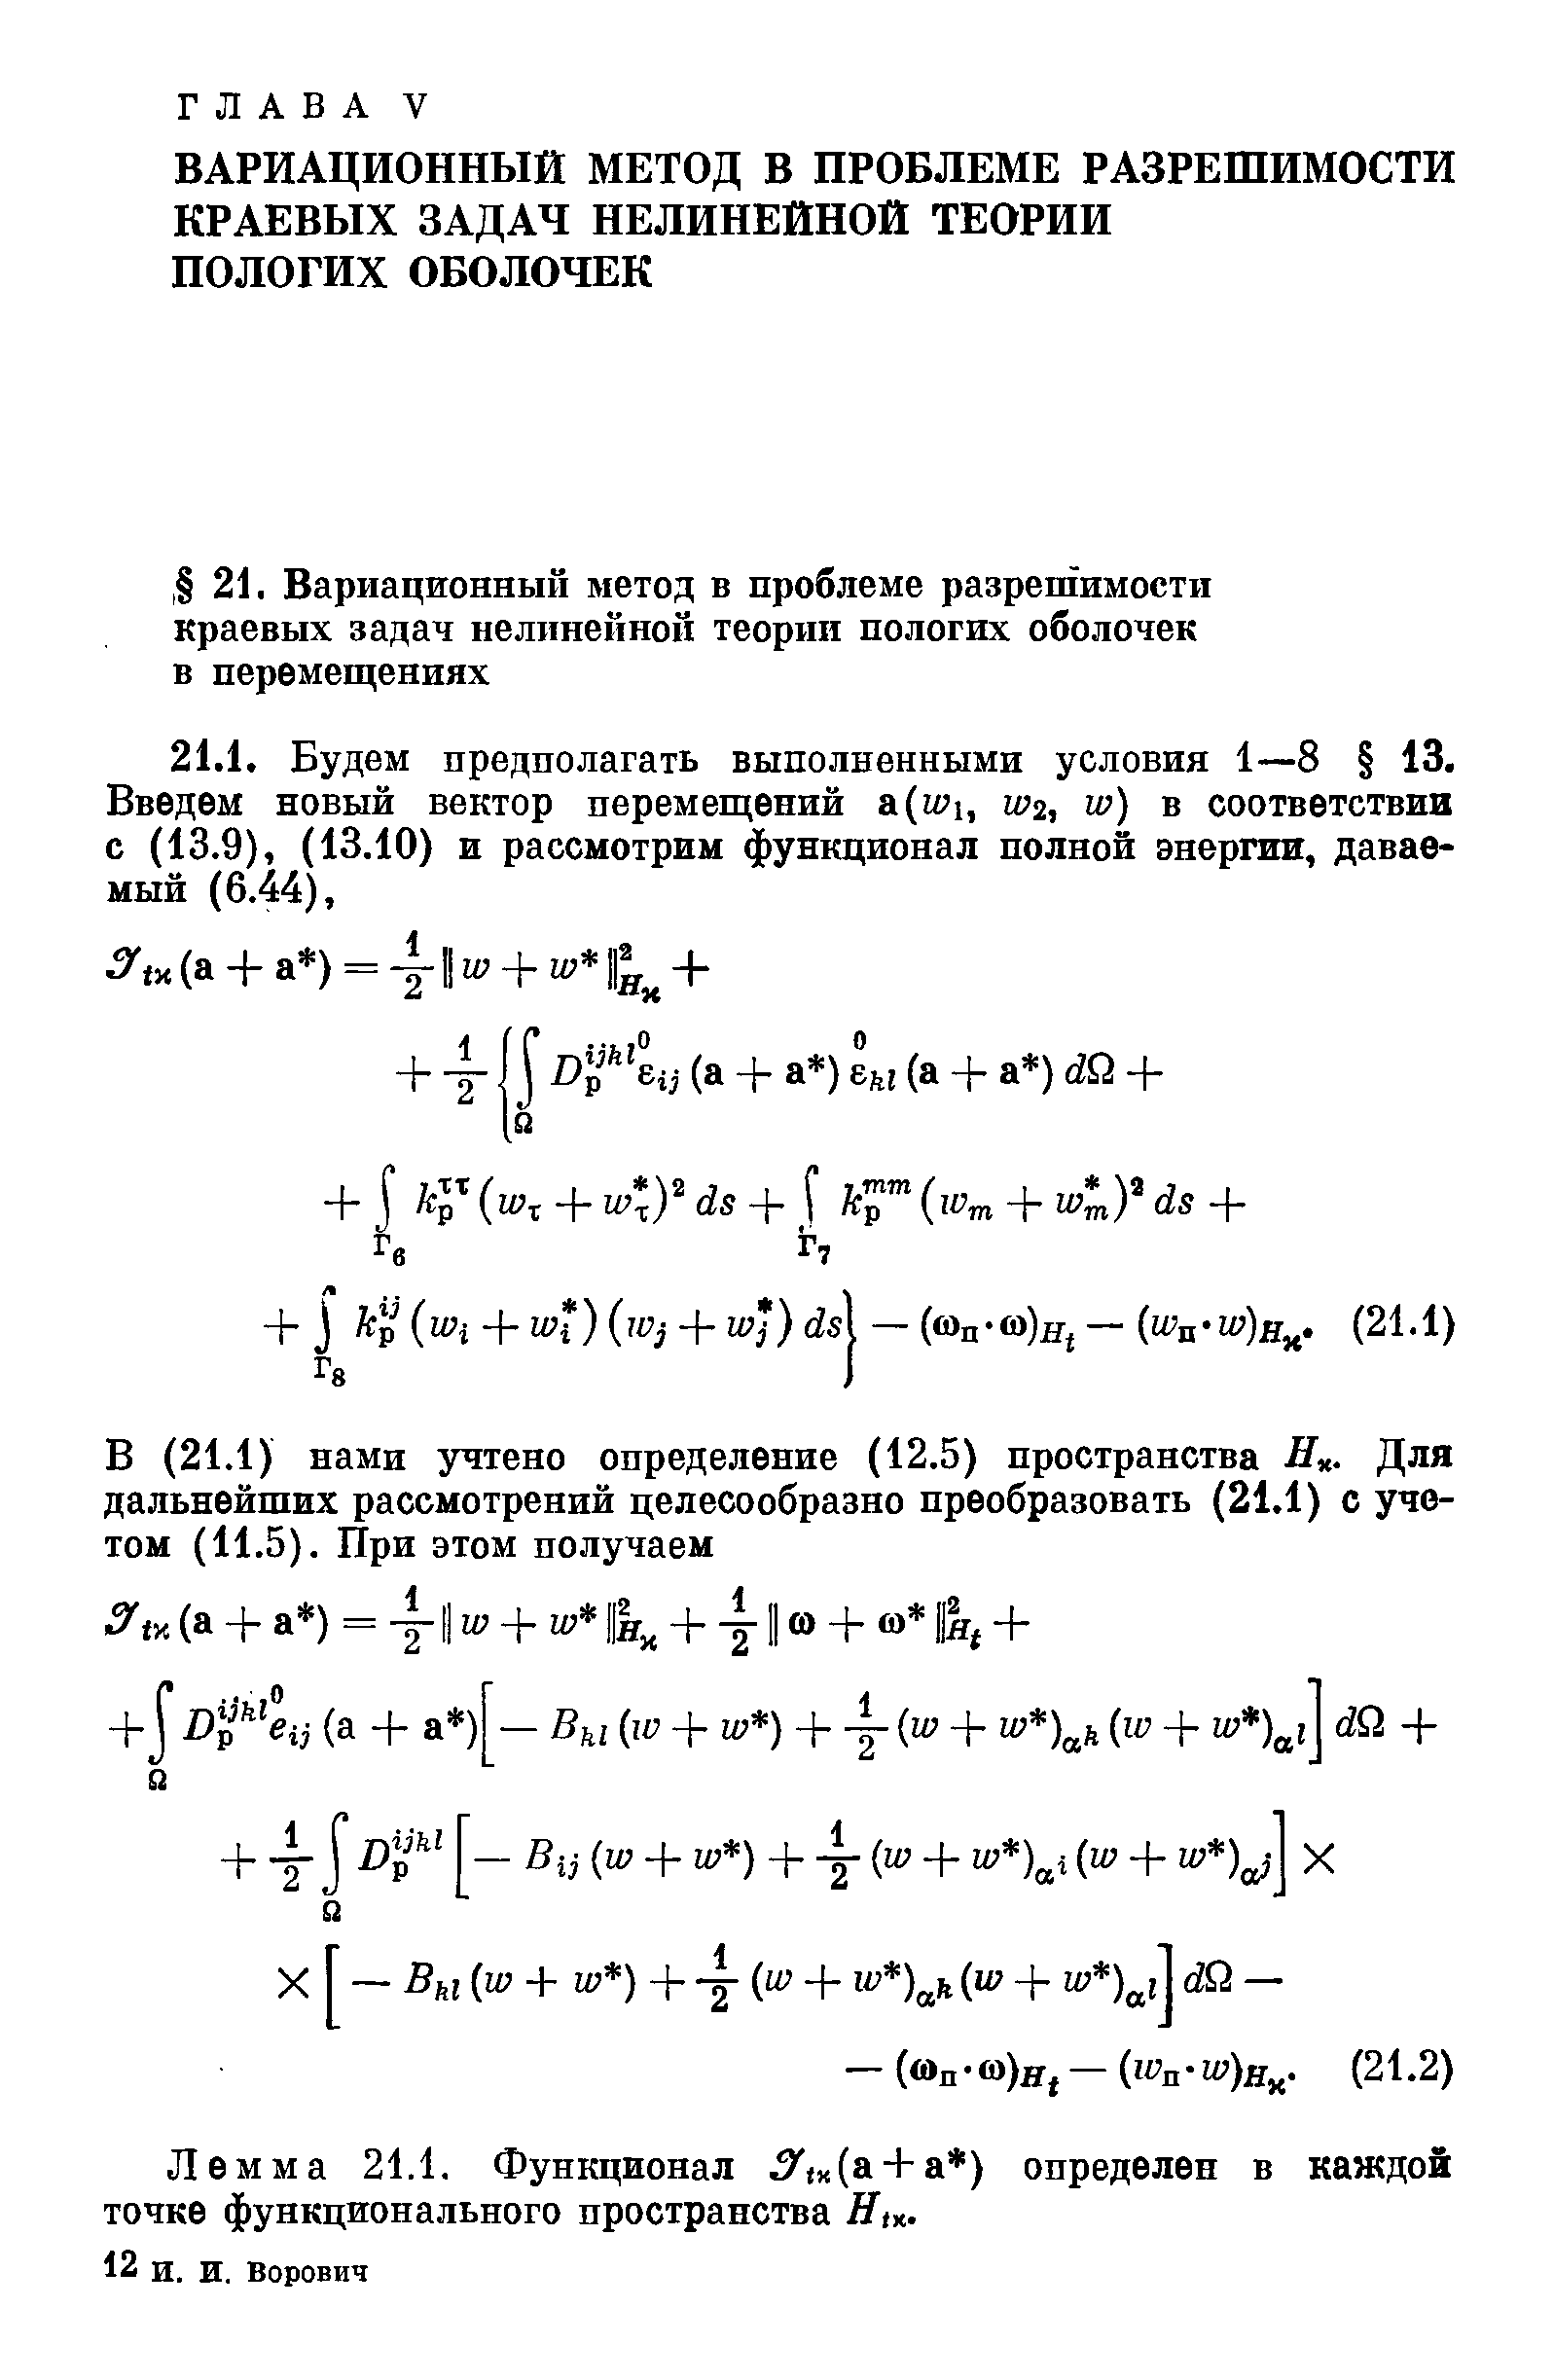 Лемма 21.1. Функционал 5 (х(а + а ) определен в каждой точке функционального пространства Я(х.
